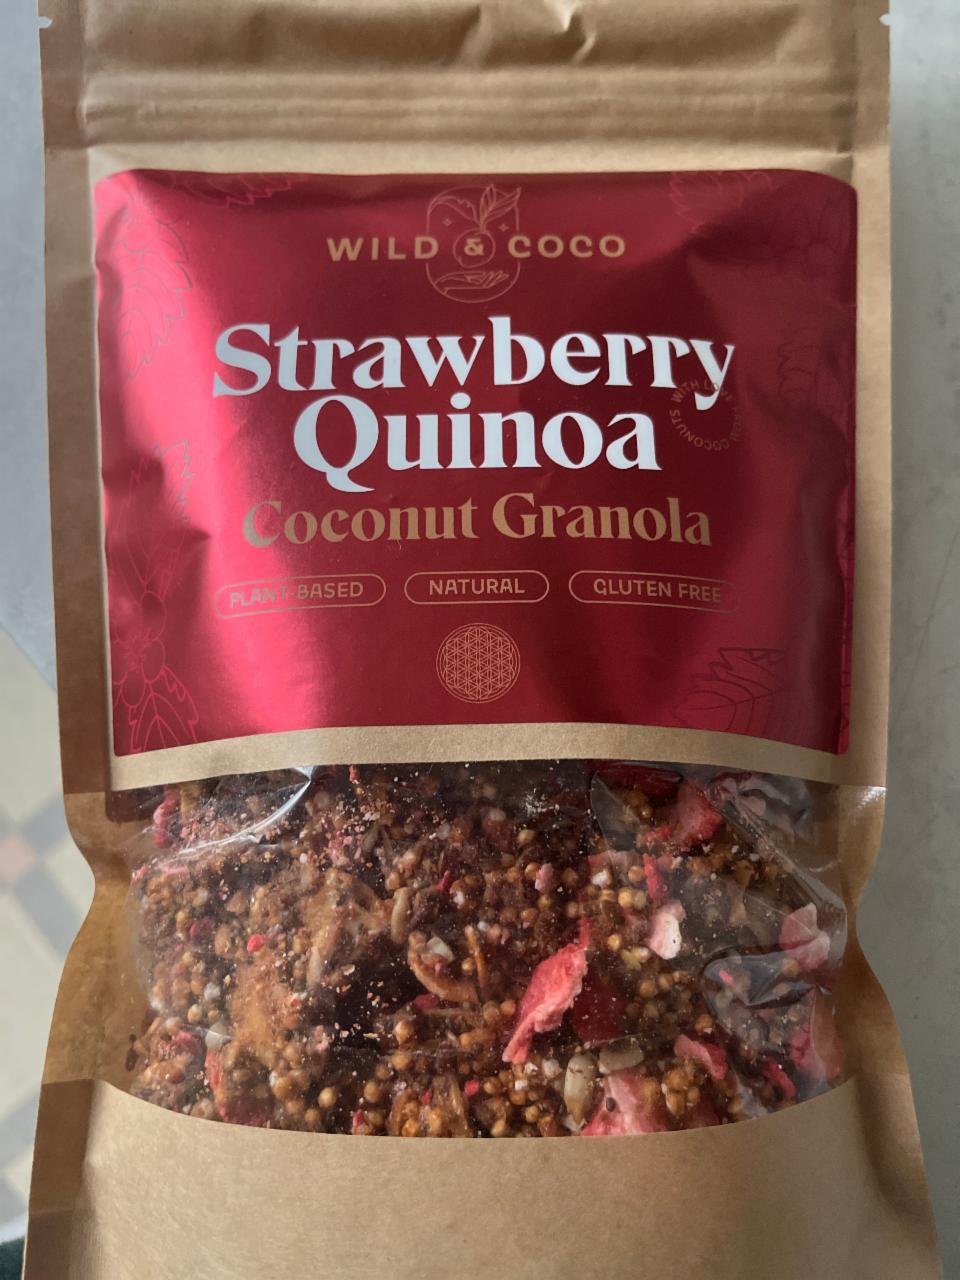 Fotografie - Strawberry quinoa coconut Granola Wild & Coco